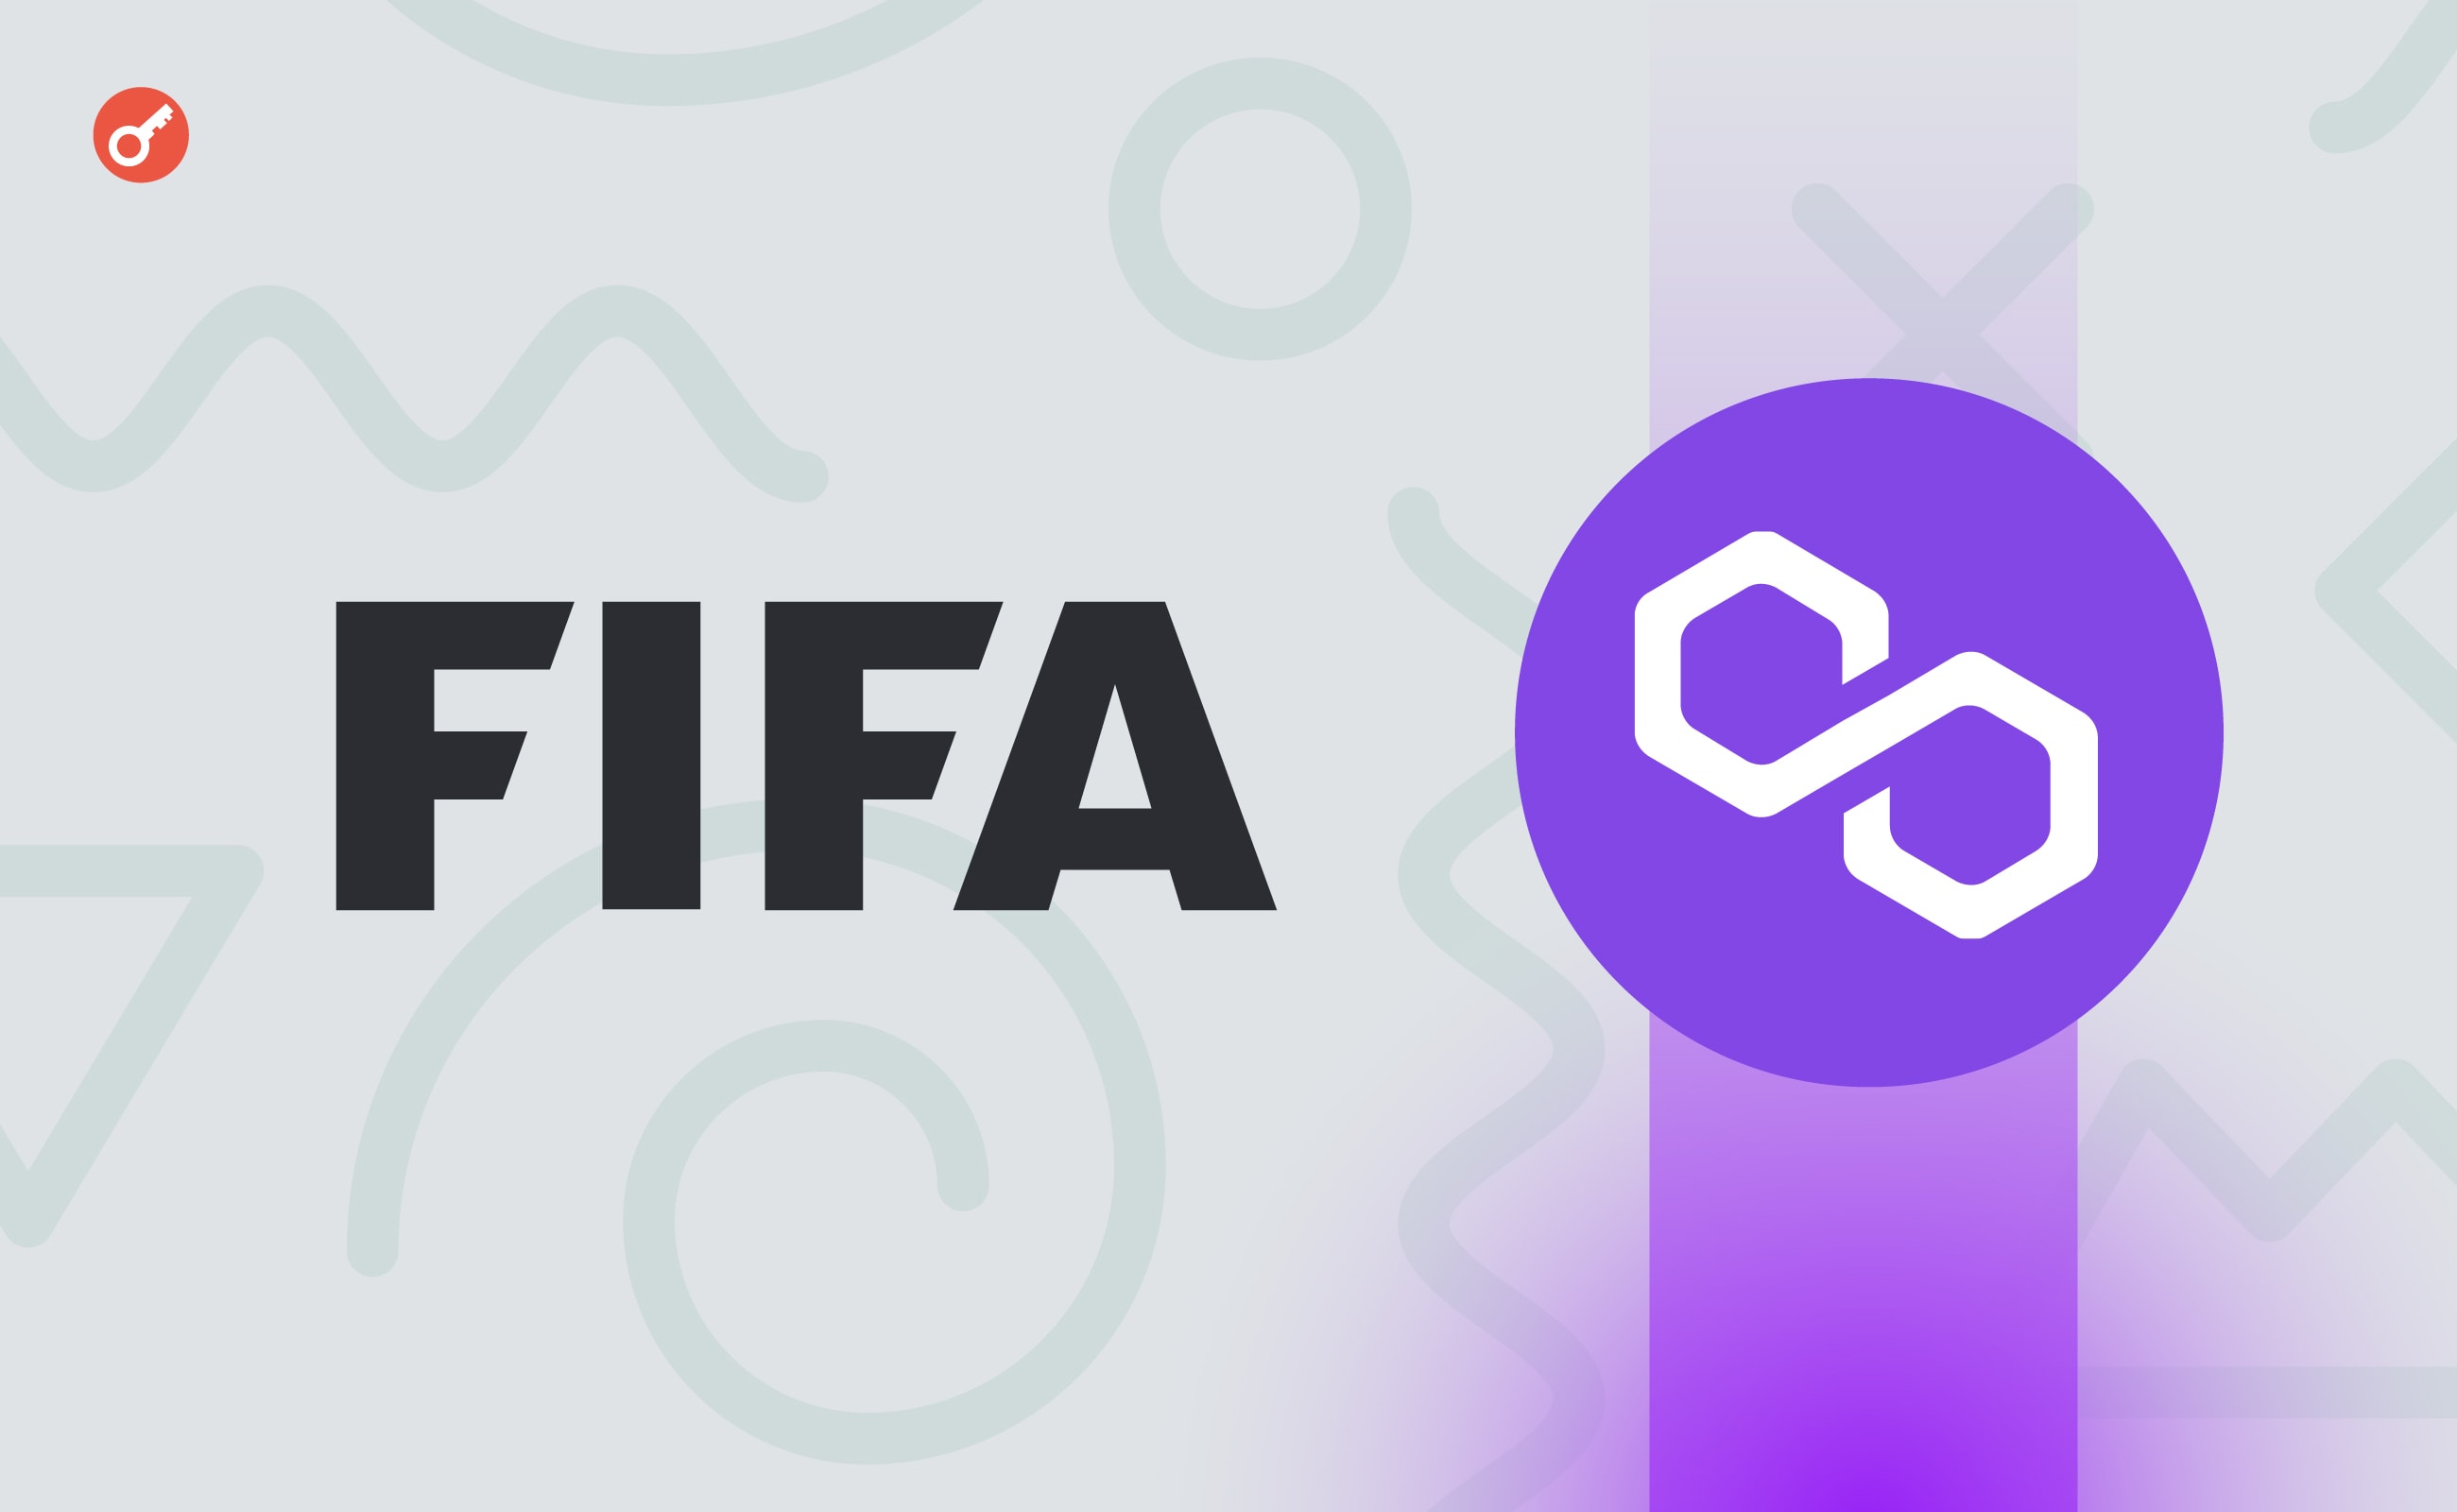 FIFA випустить нову NFT-колекцію і проведе розіграш квитків на ЧС-2026. Головний колаж новини.